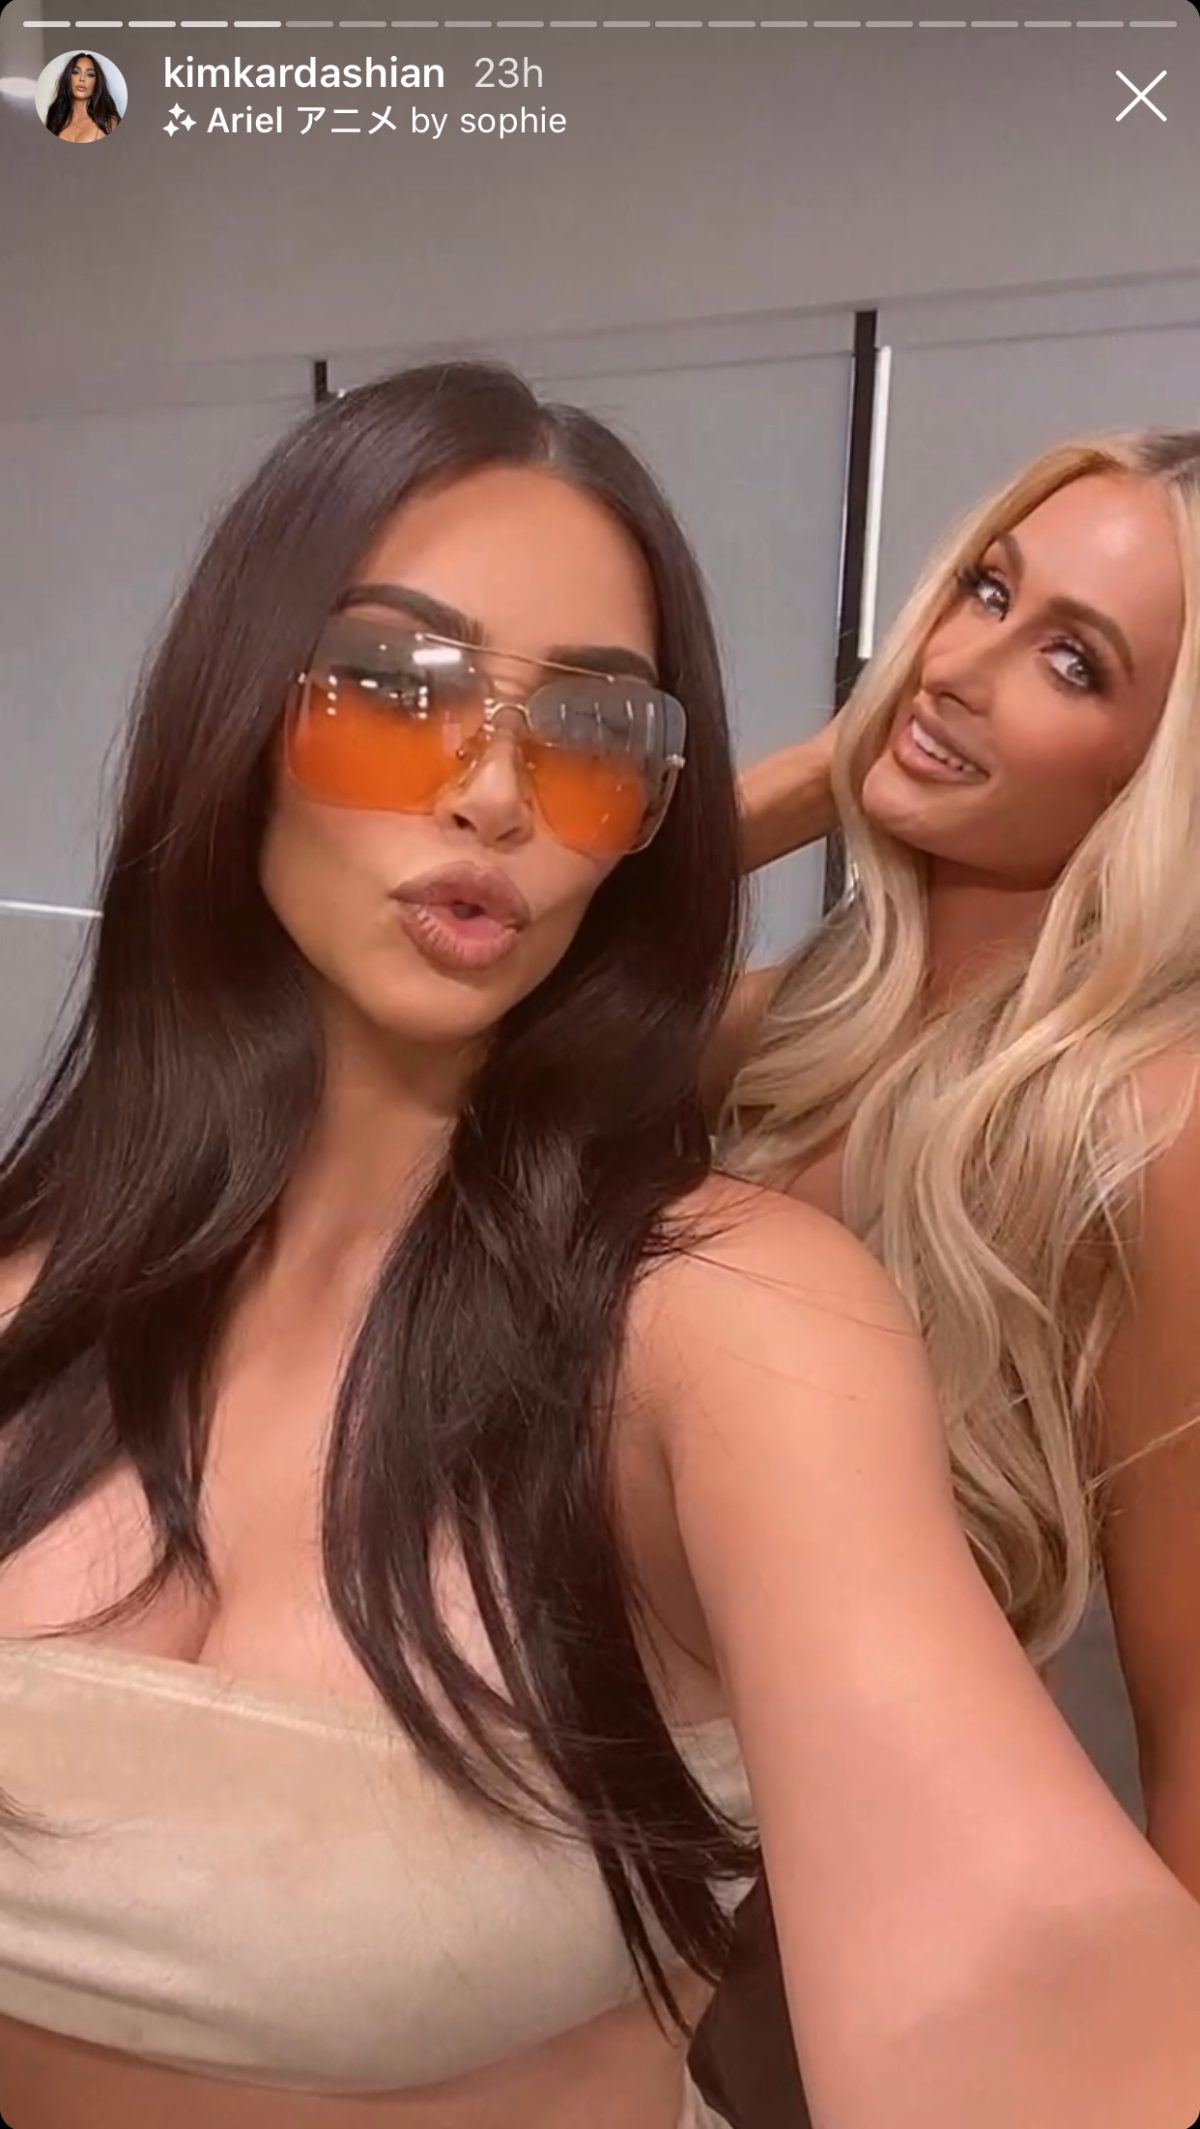 Paris Hilton Isn't Jealous of Kim Kardashian: I am the original!